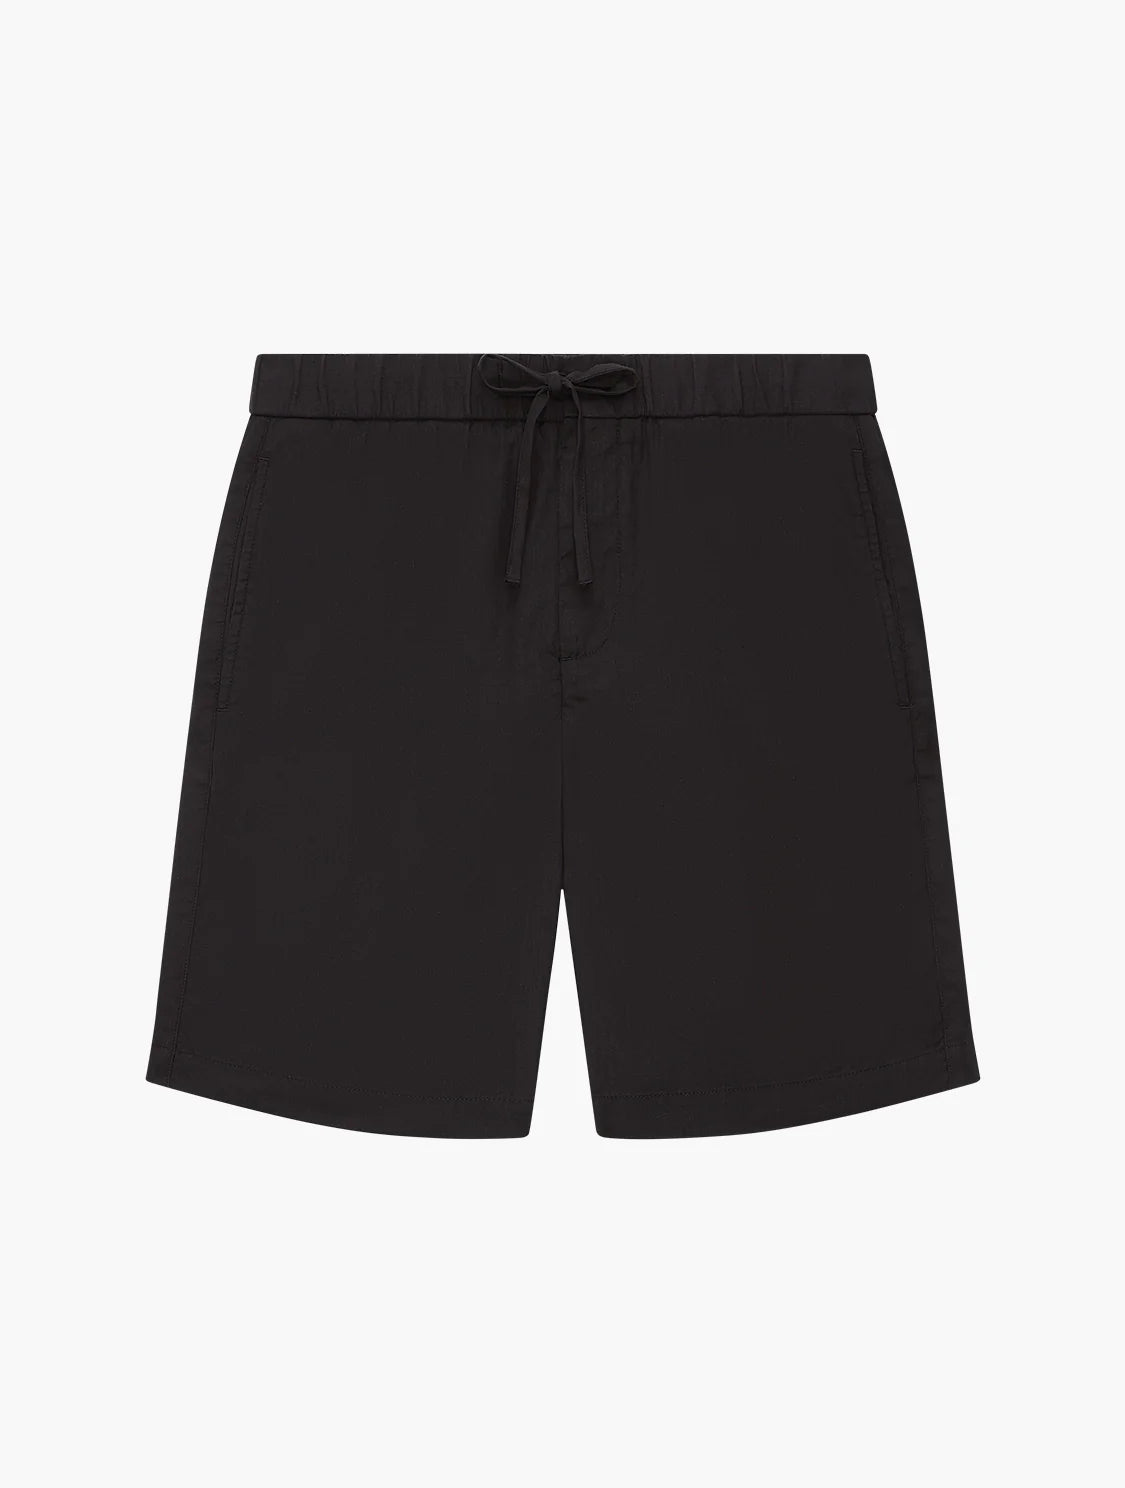 Felipe Black Linen Shorts